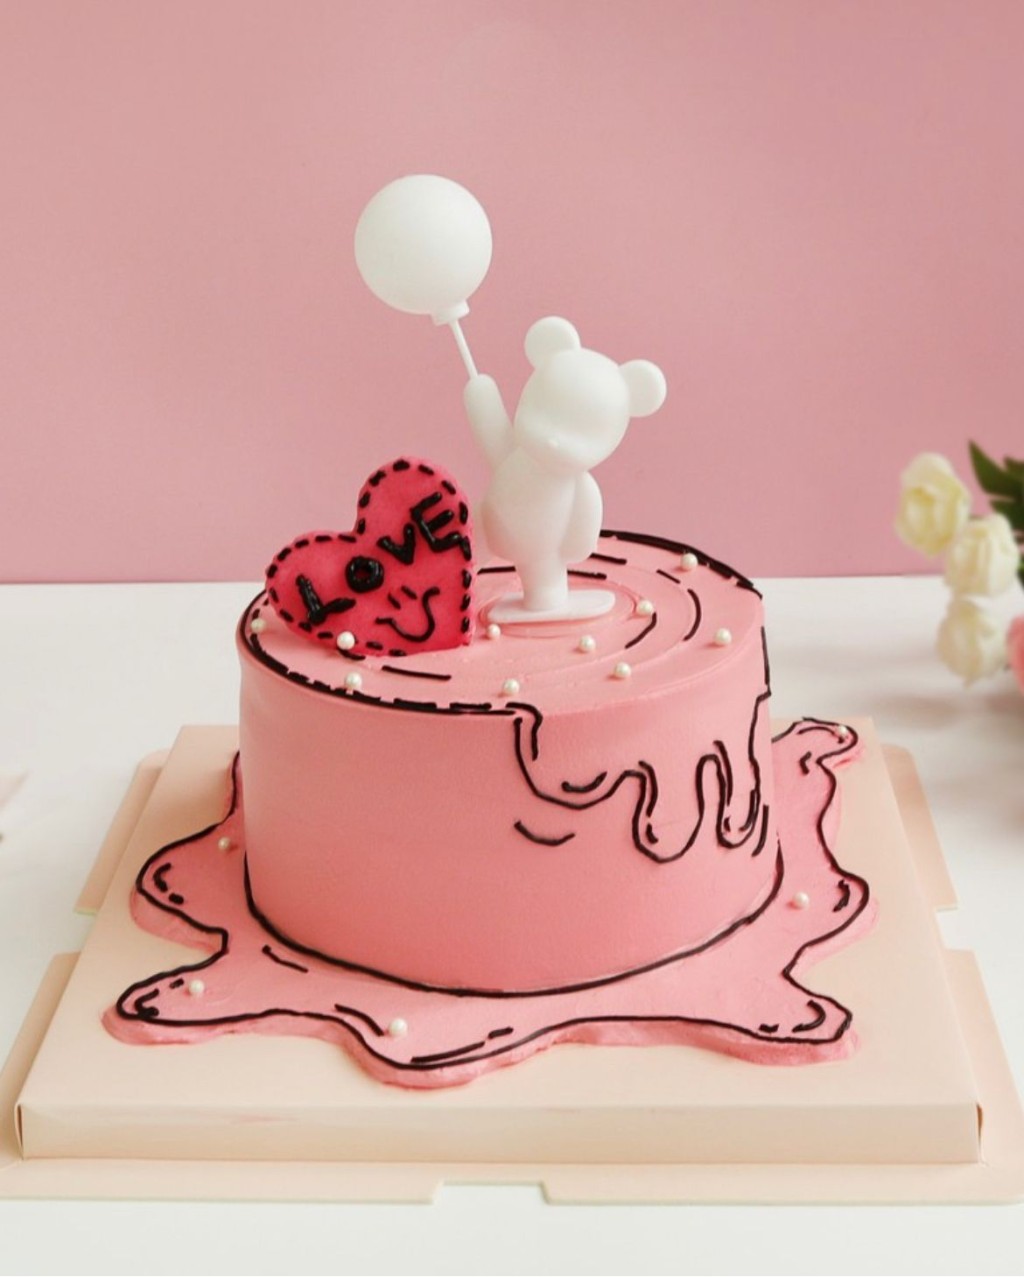 告白气球熊水蜜桃玫瑰蜂蜜戚风蛋糕（5寸），制作2.5小时。